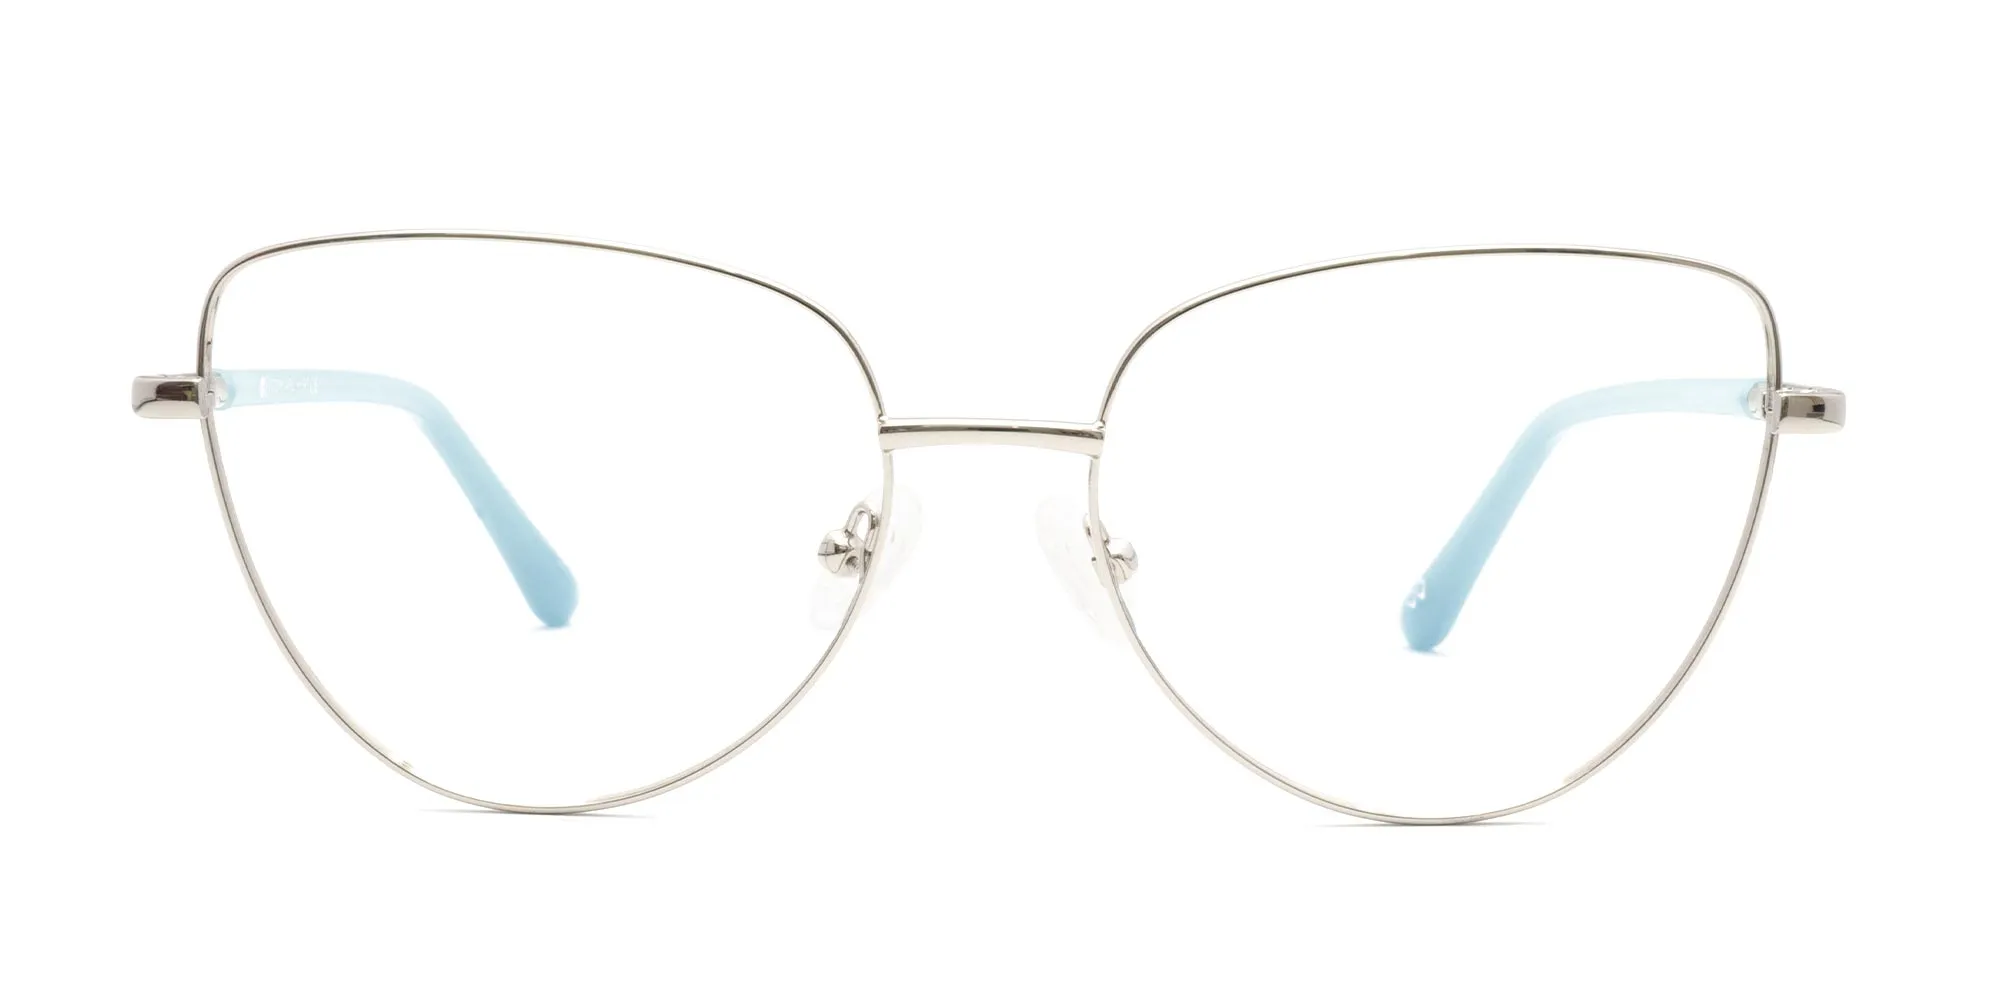 Trending Glasses For Ladies-2